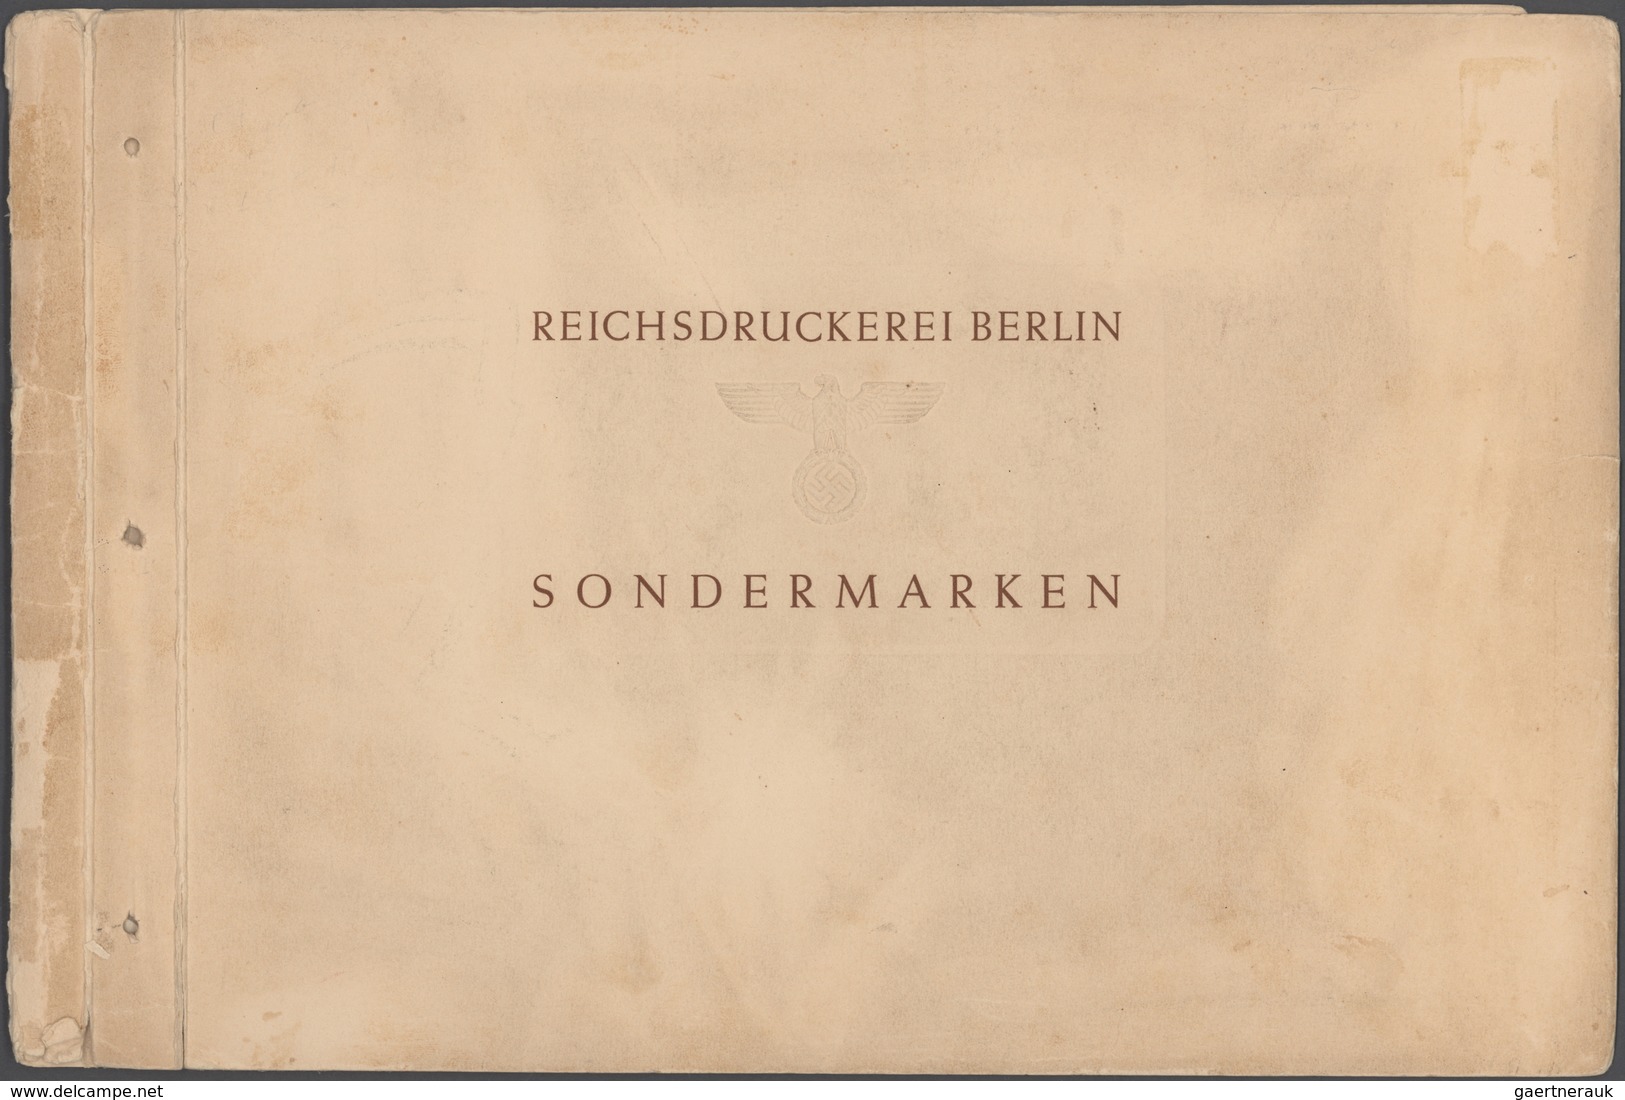 Deutsches Reich: 1872/1945, Sammlung ab Kaiserreich mit passablem Brustschildteil, desweiteren alle